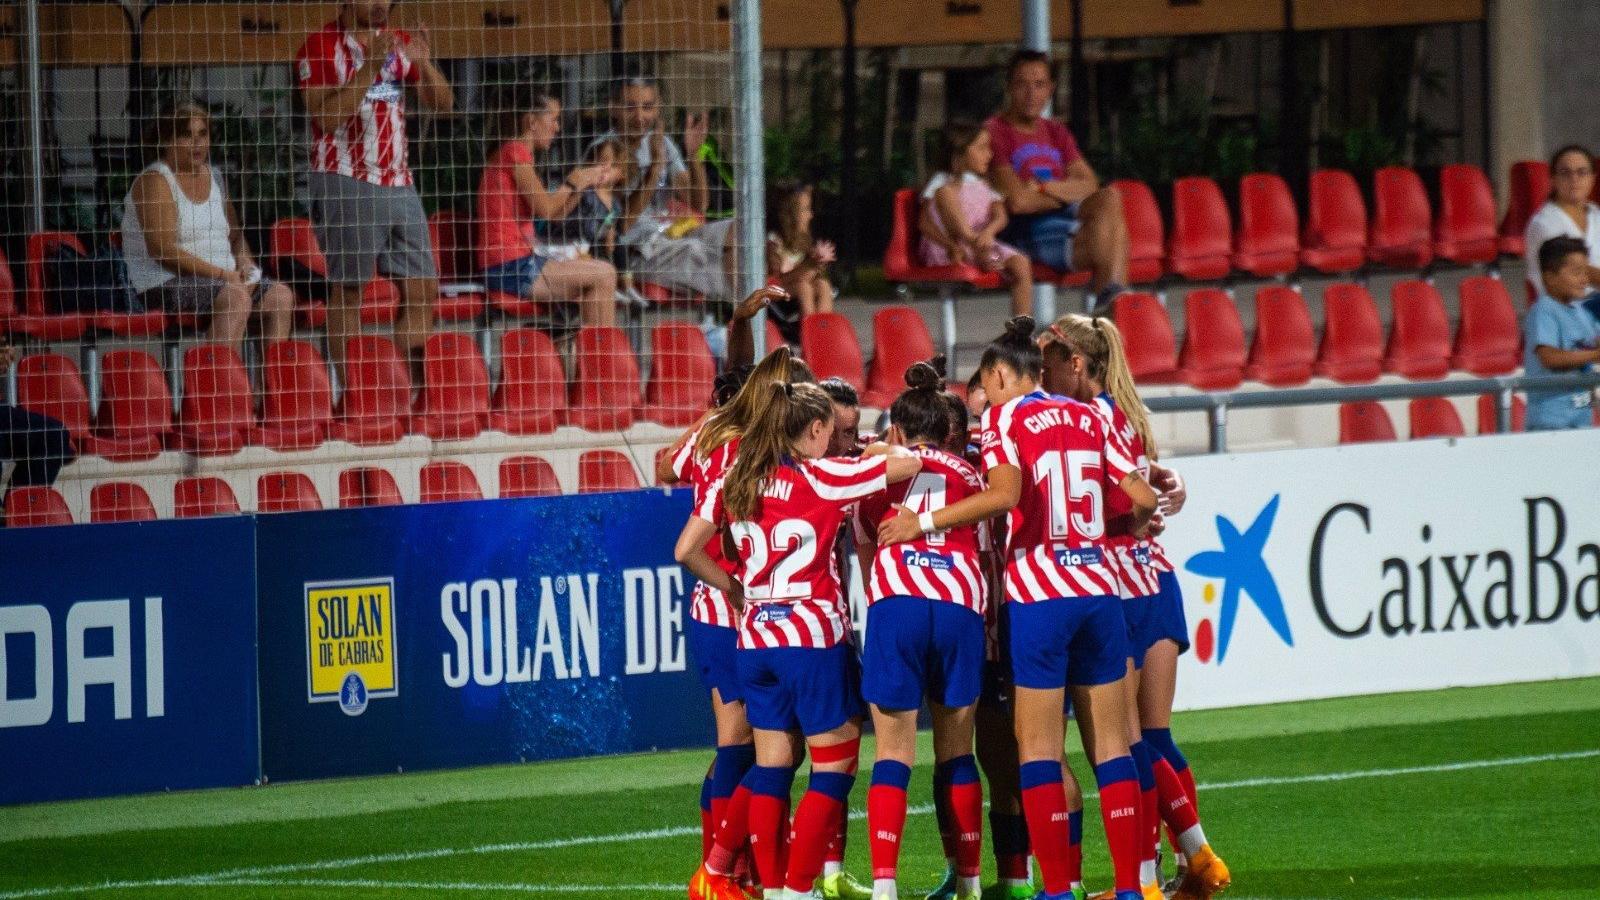 Alcalá.- El Atlético de Madrid femenino se alza con la victoria en el torneo de fútbol local frente al ACF Florentina